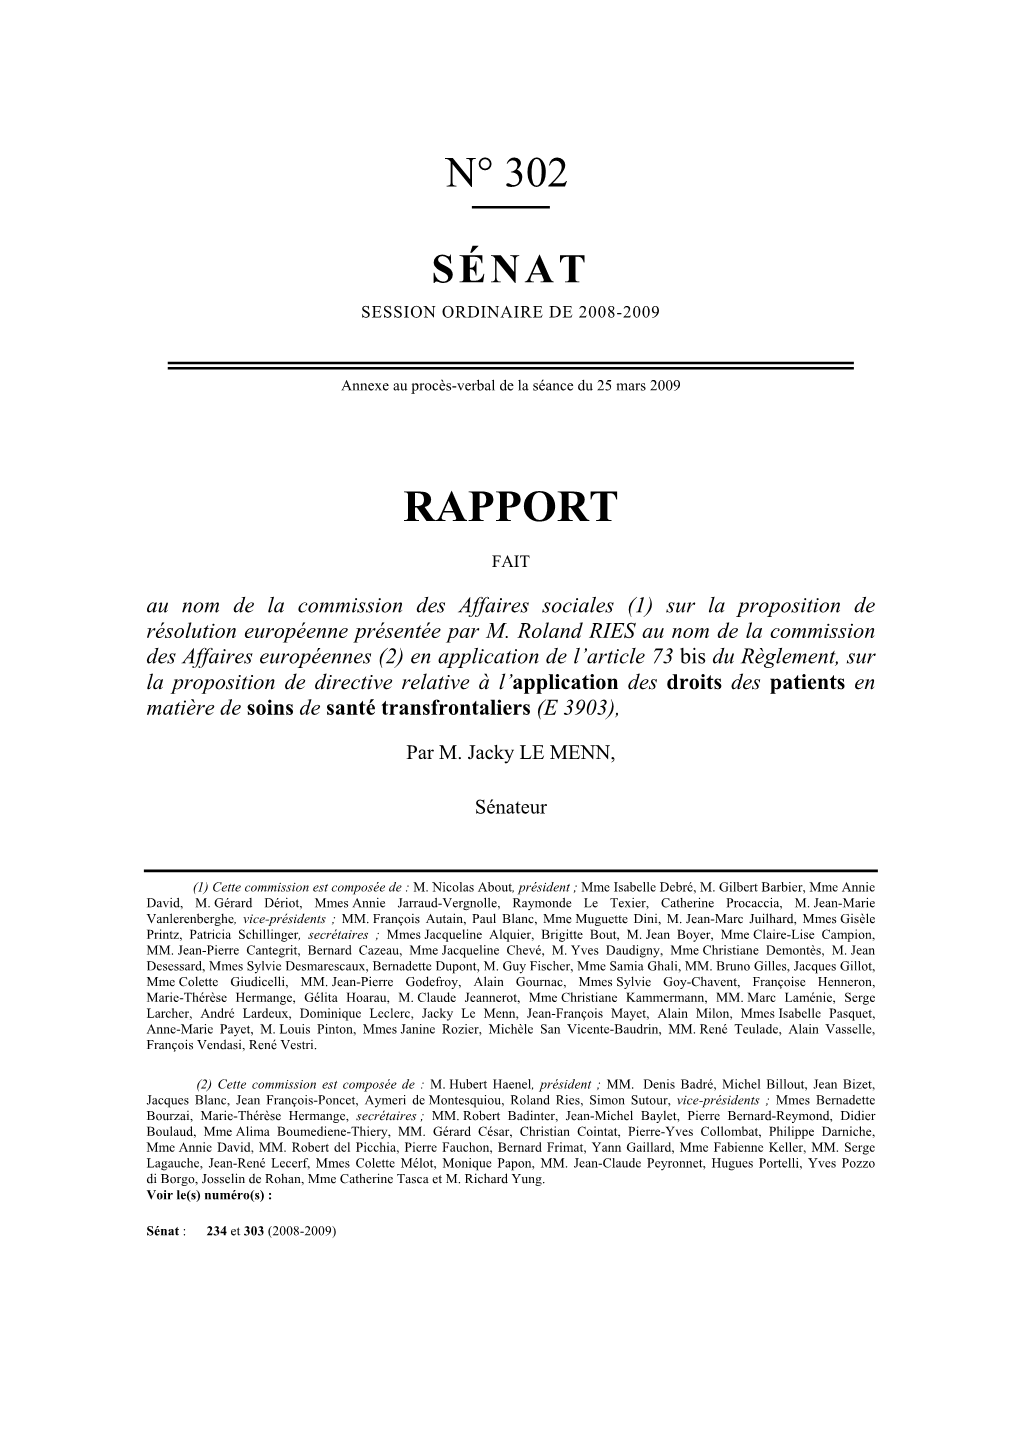 Rapport N° 230 (2008-2009), « Soins De Santé Transfrontaliers », De Roland Ries, Fait Au Nom De La Commission Des Affaires Européennes